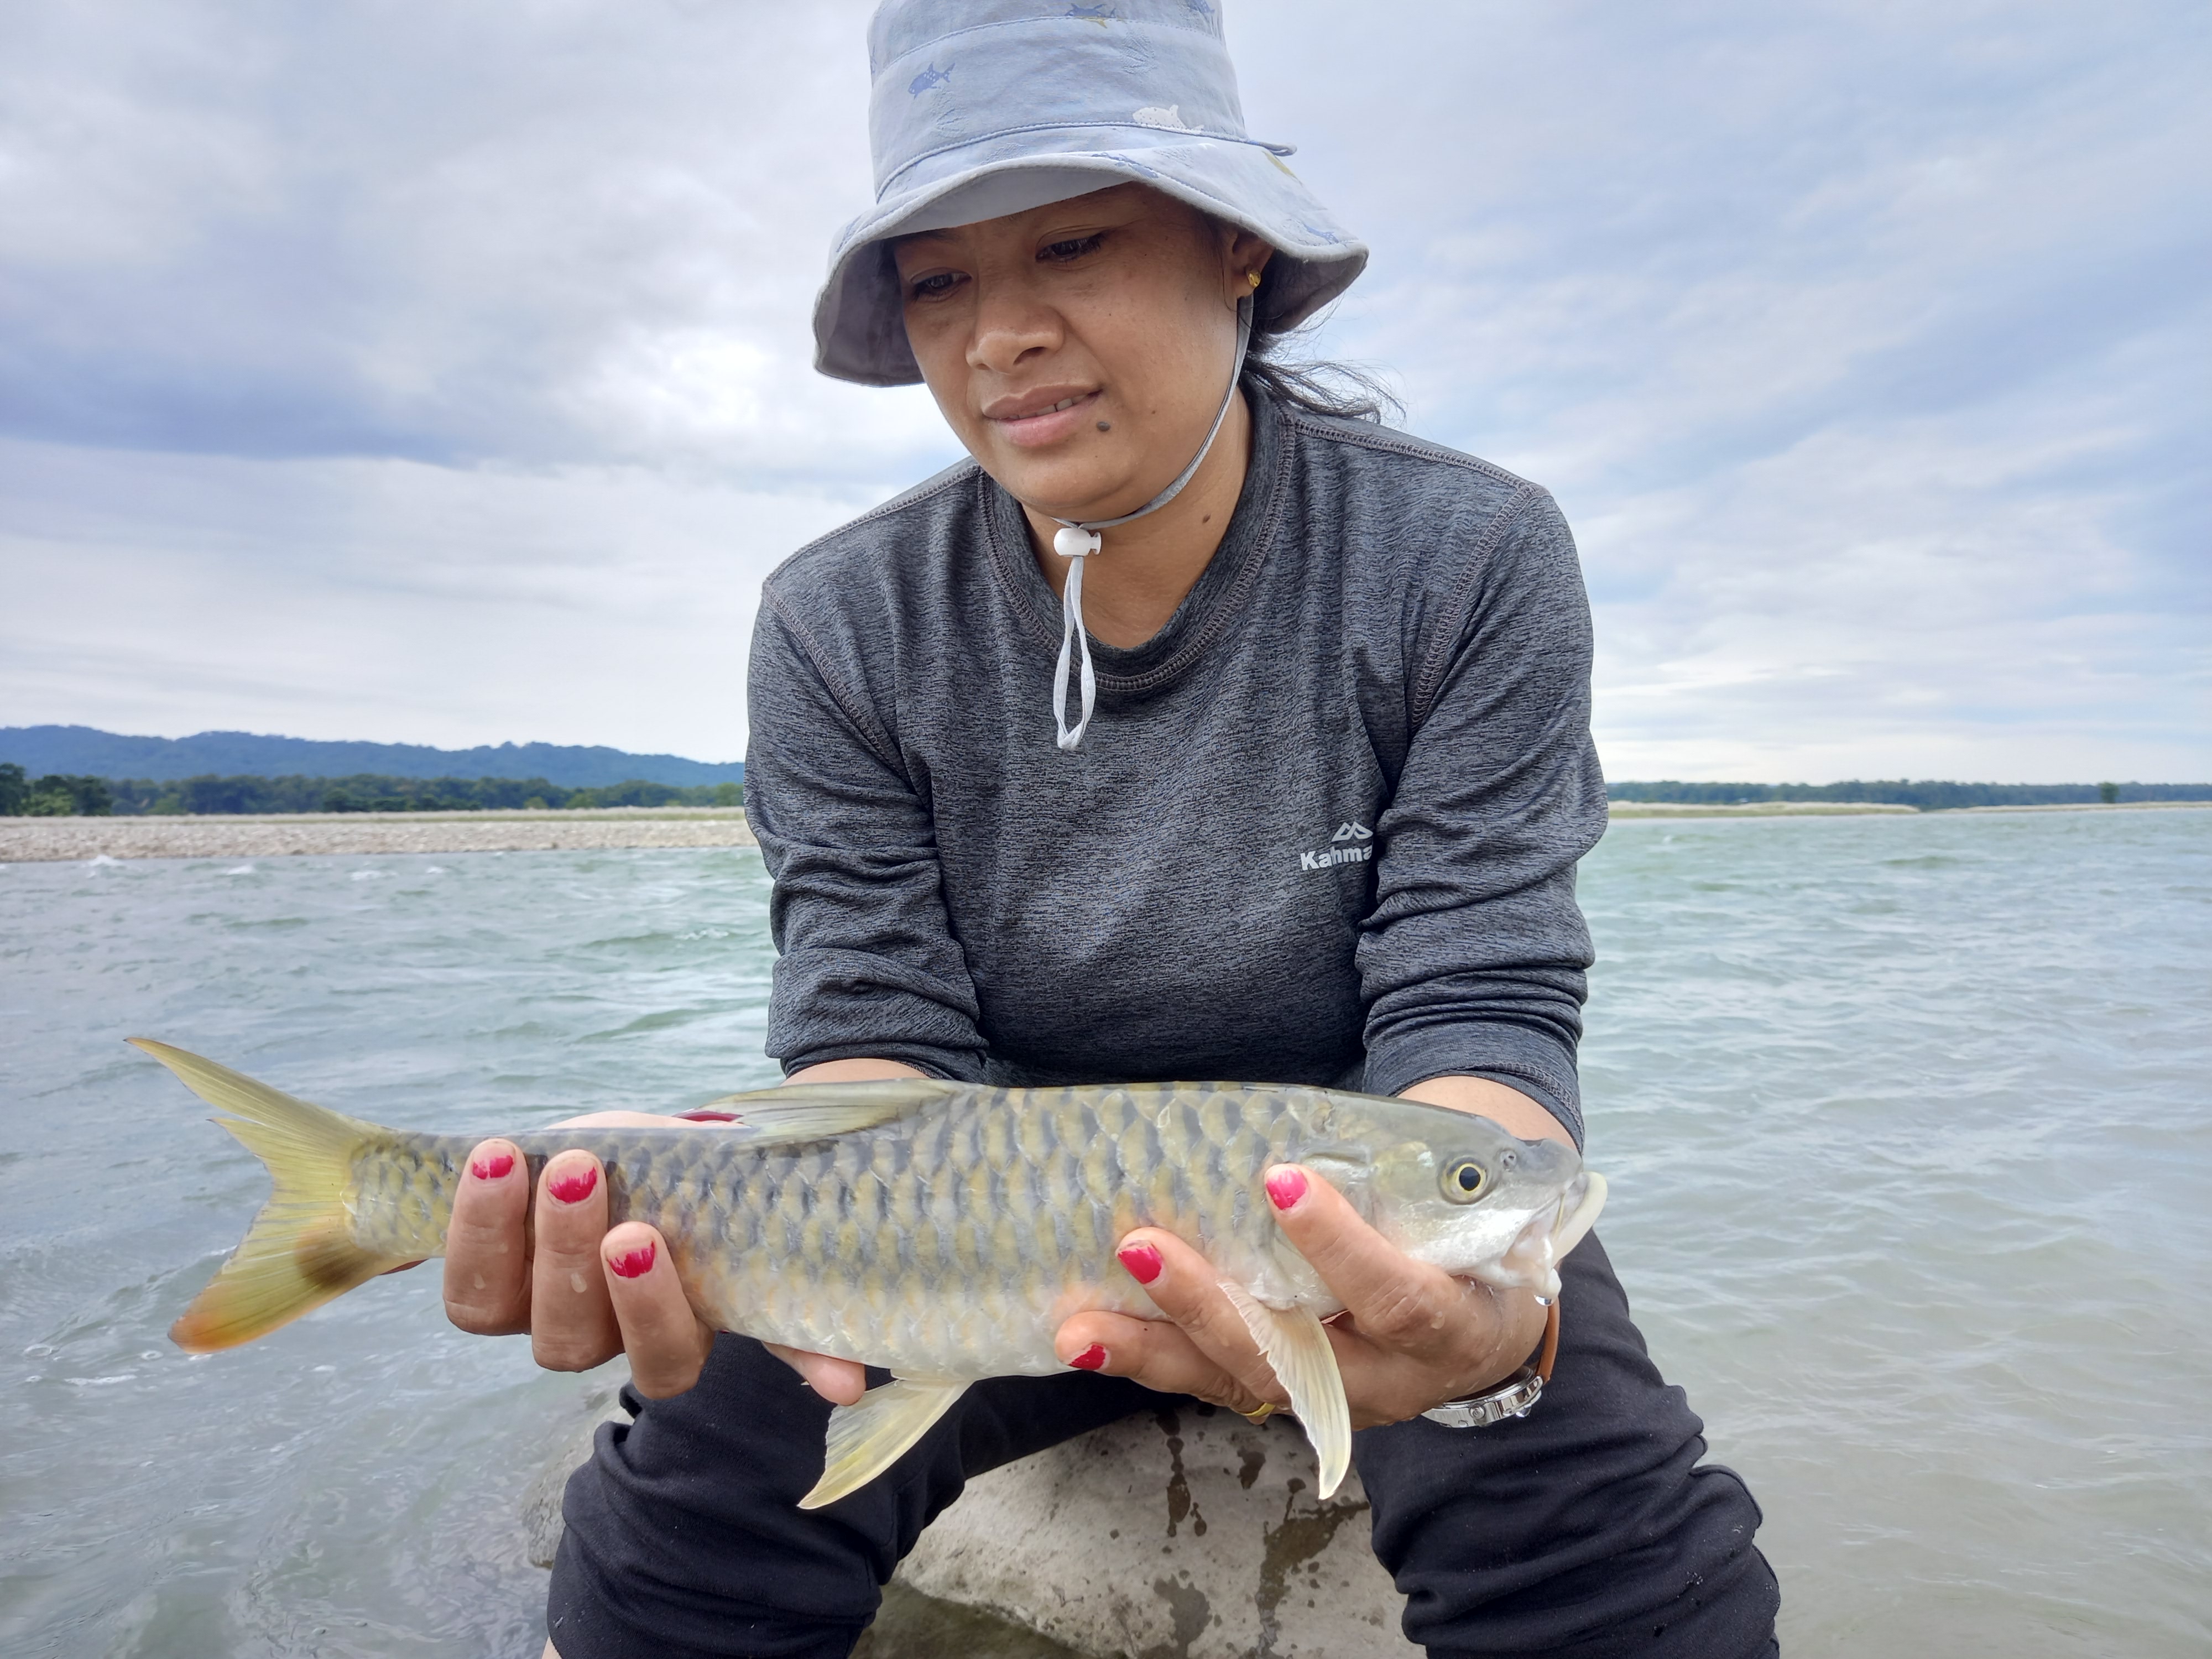 Seminar on ‘Connecting fish, rivers and people in the Hindu-Kush Himalaya’